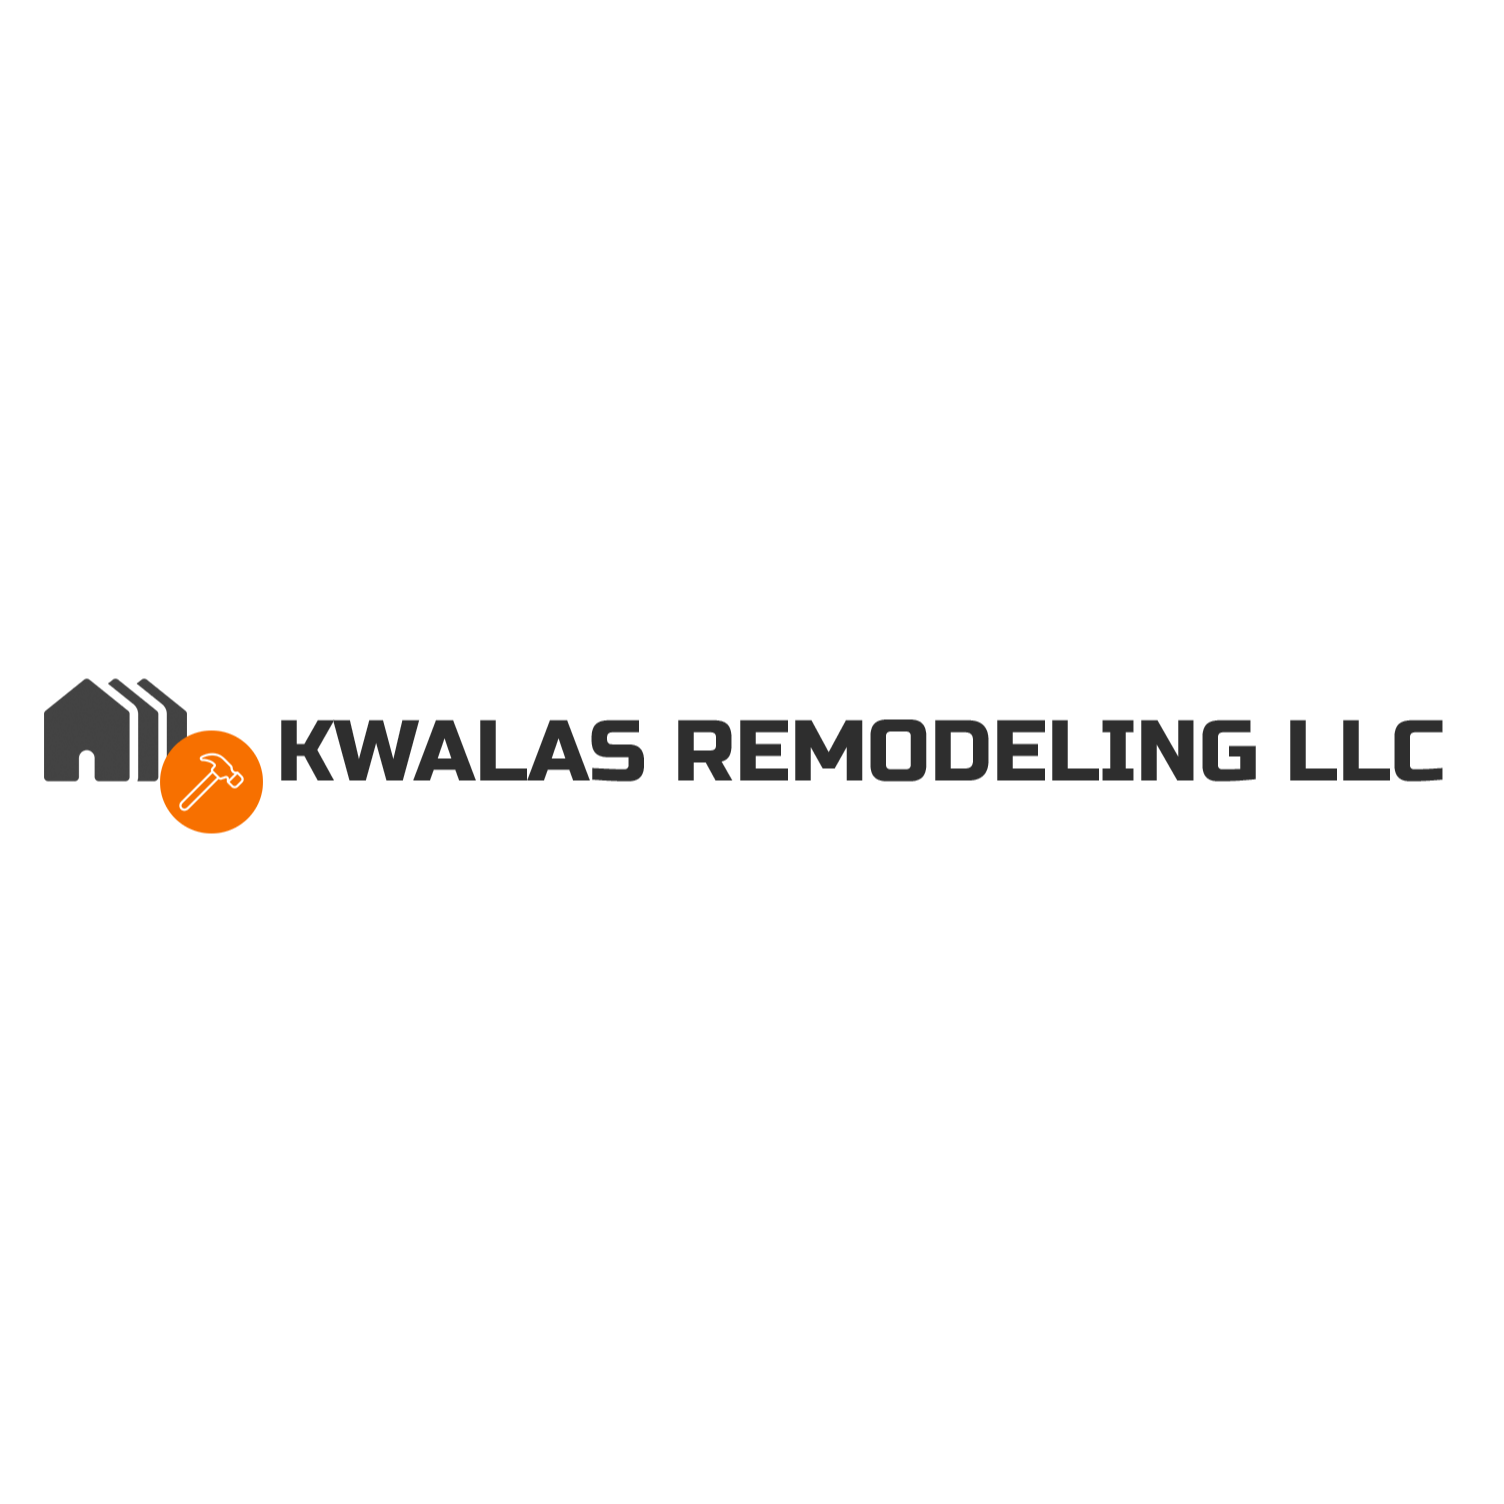 Kwalas Remodeling LLC